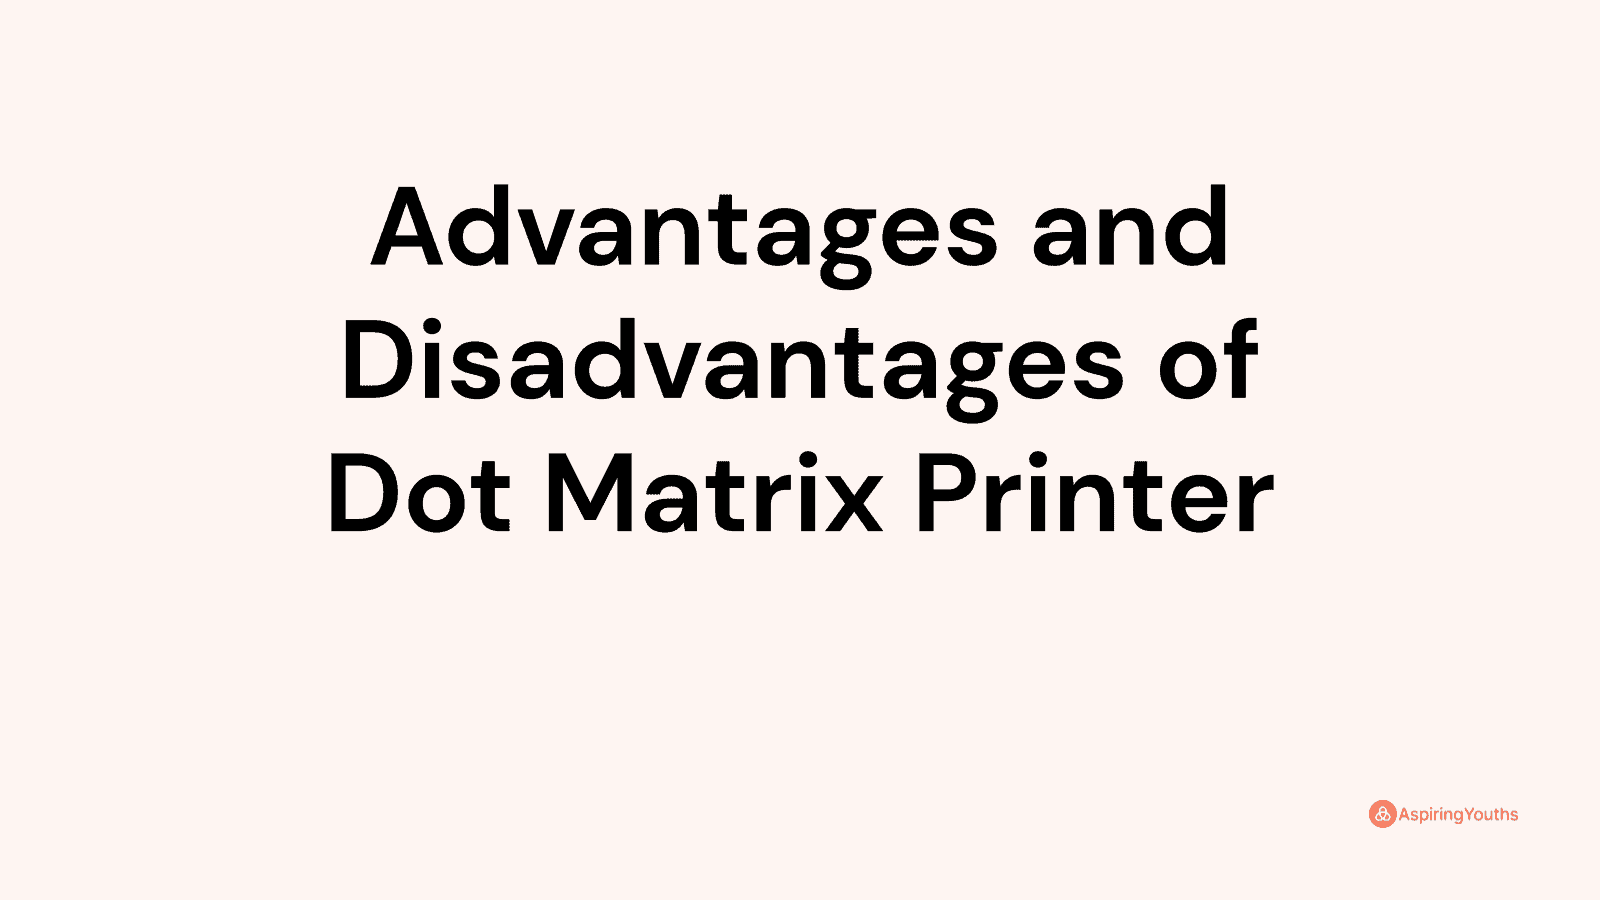 Advantages and disadvantages of Dot Matrix Printer